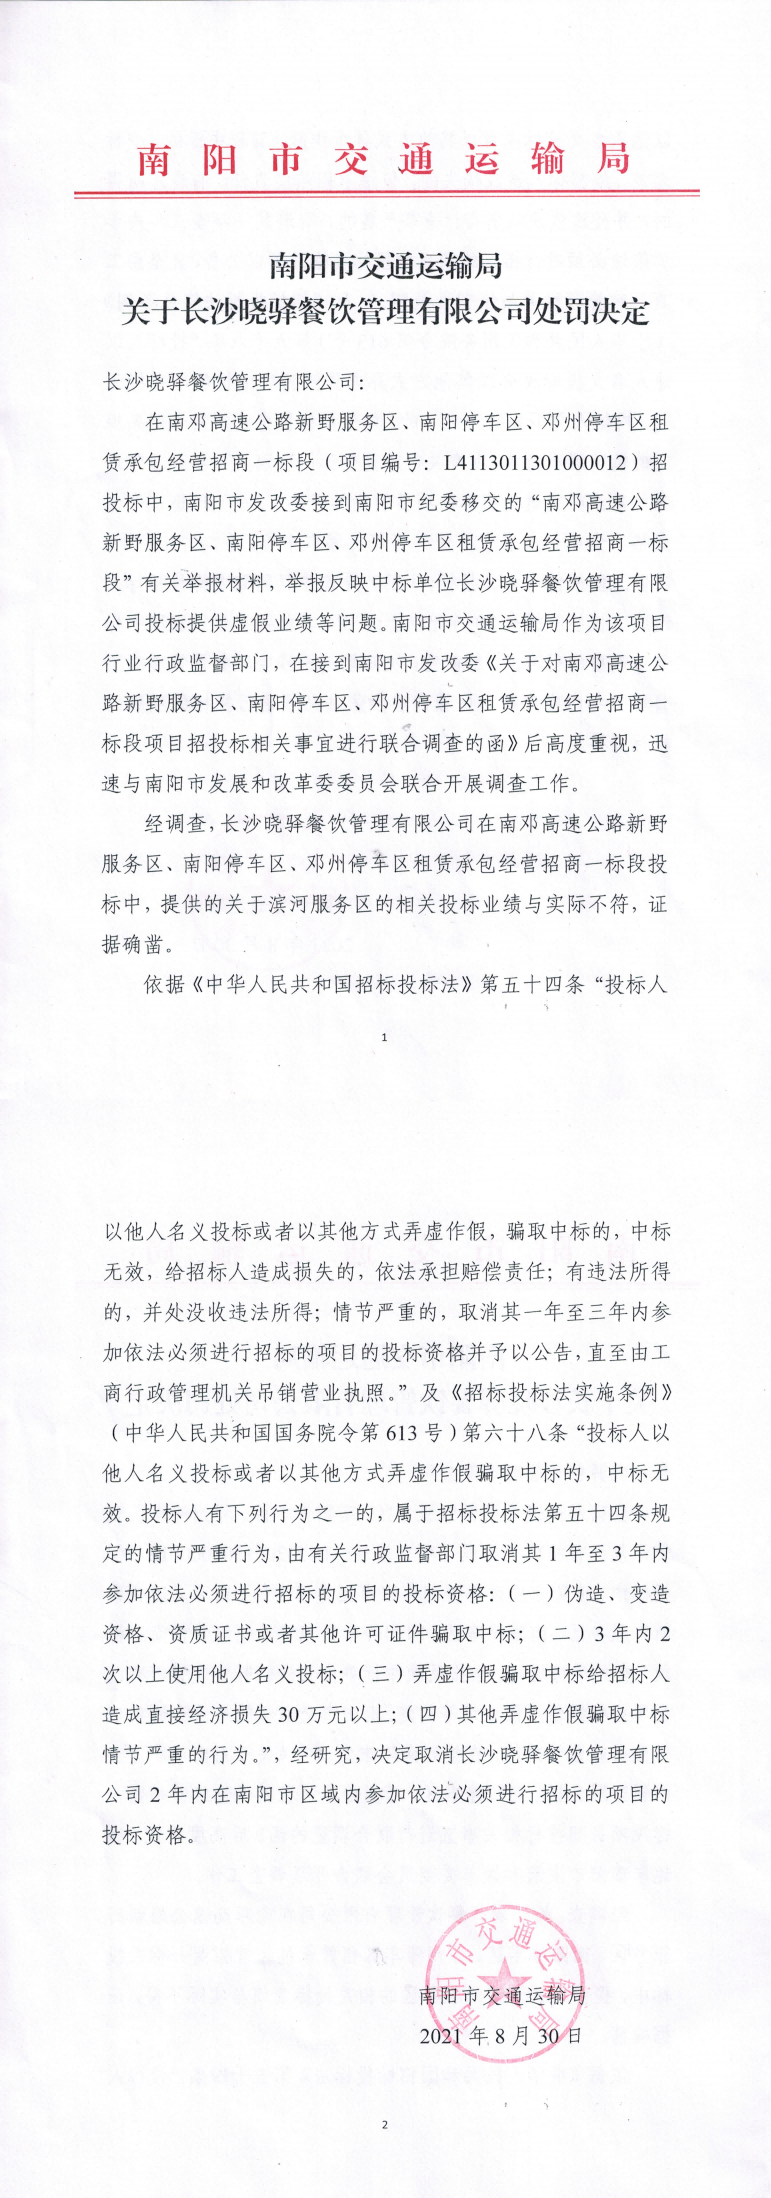 附件：南阳市交通运输局关于长沙晓驿餐饮管理有限公司处罚决定_00(1).png